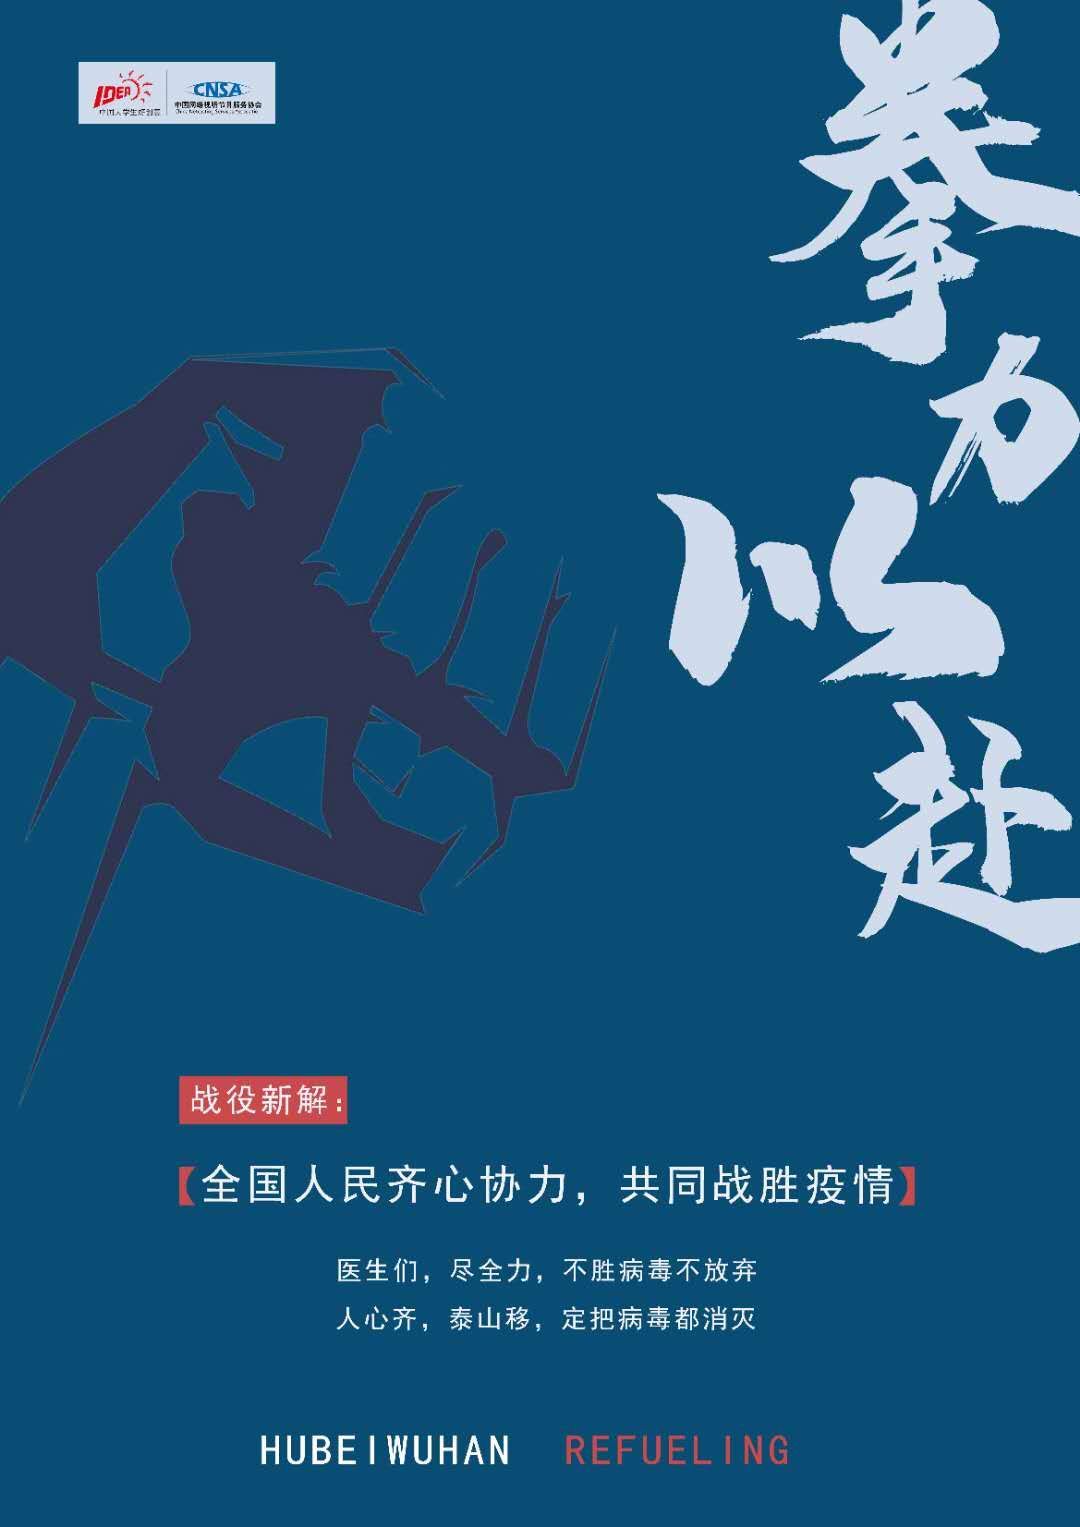 大广赛—疫情文字海报设计